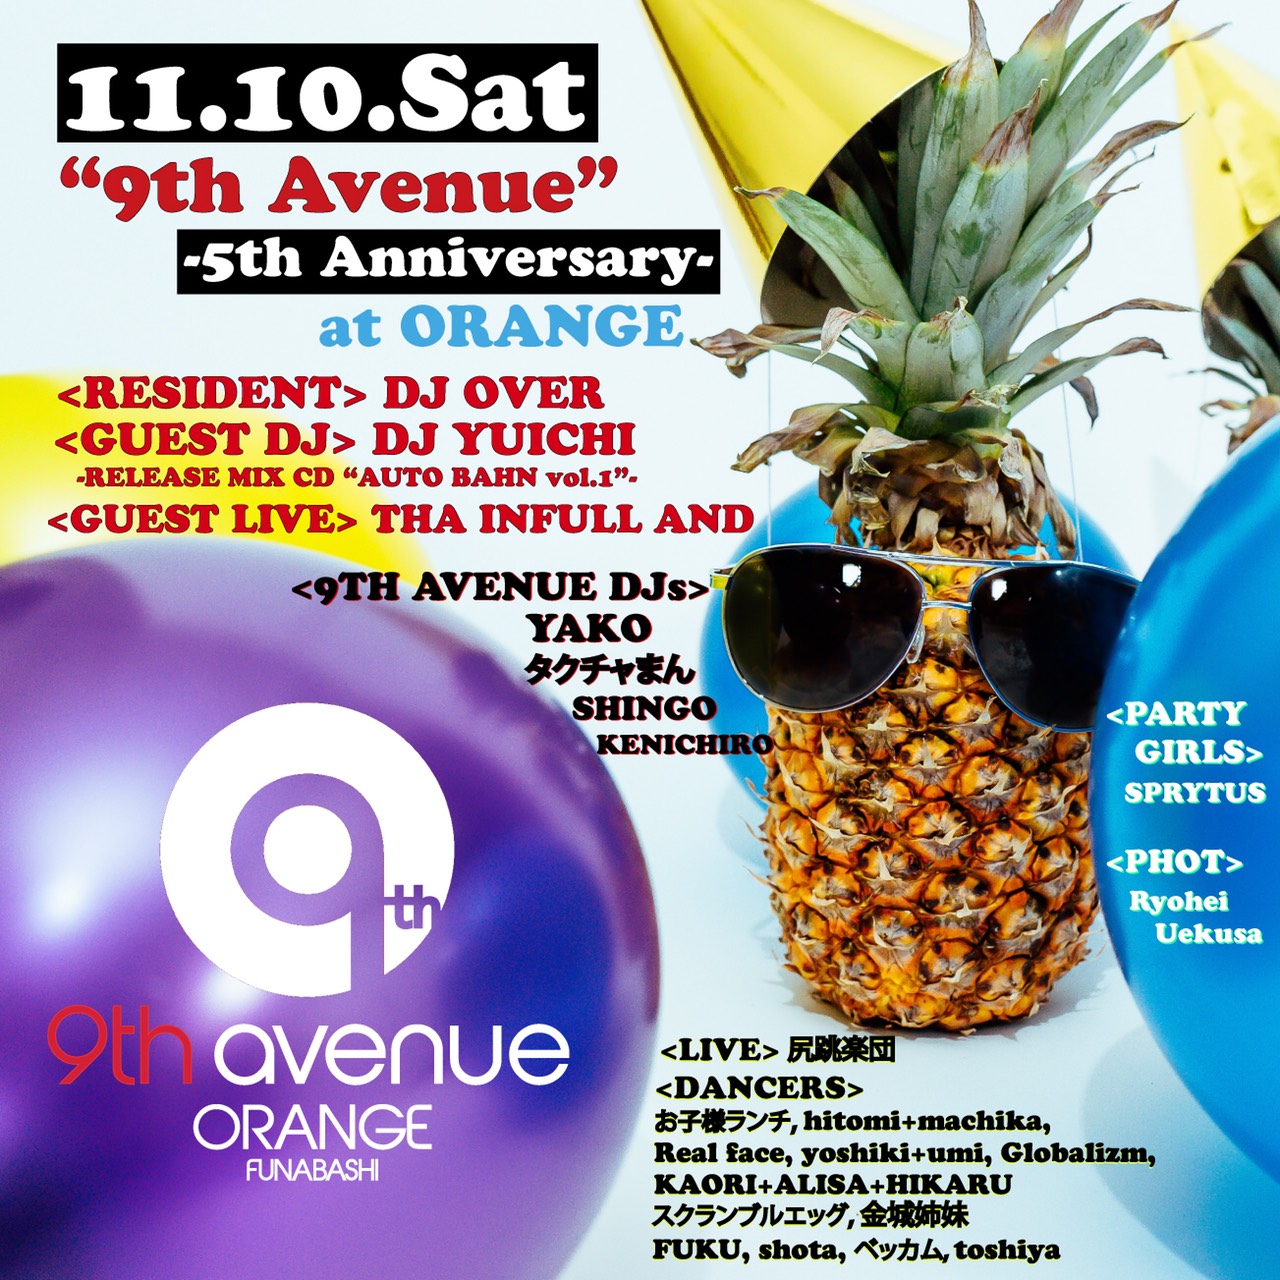 9th Avenue -5th Anniversary-